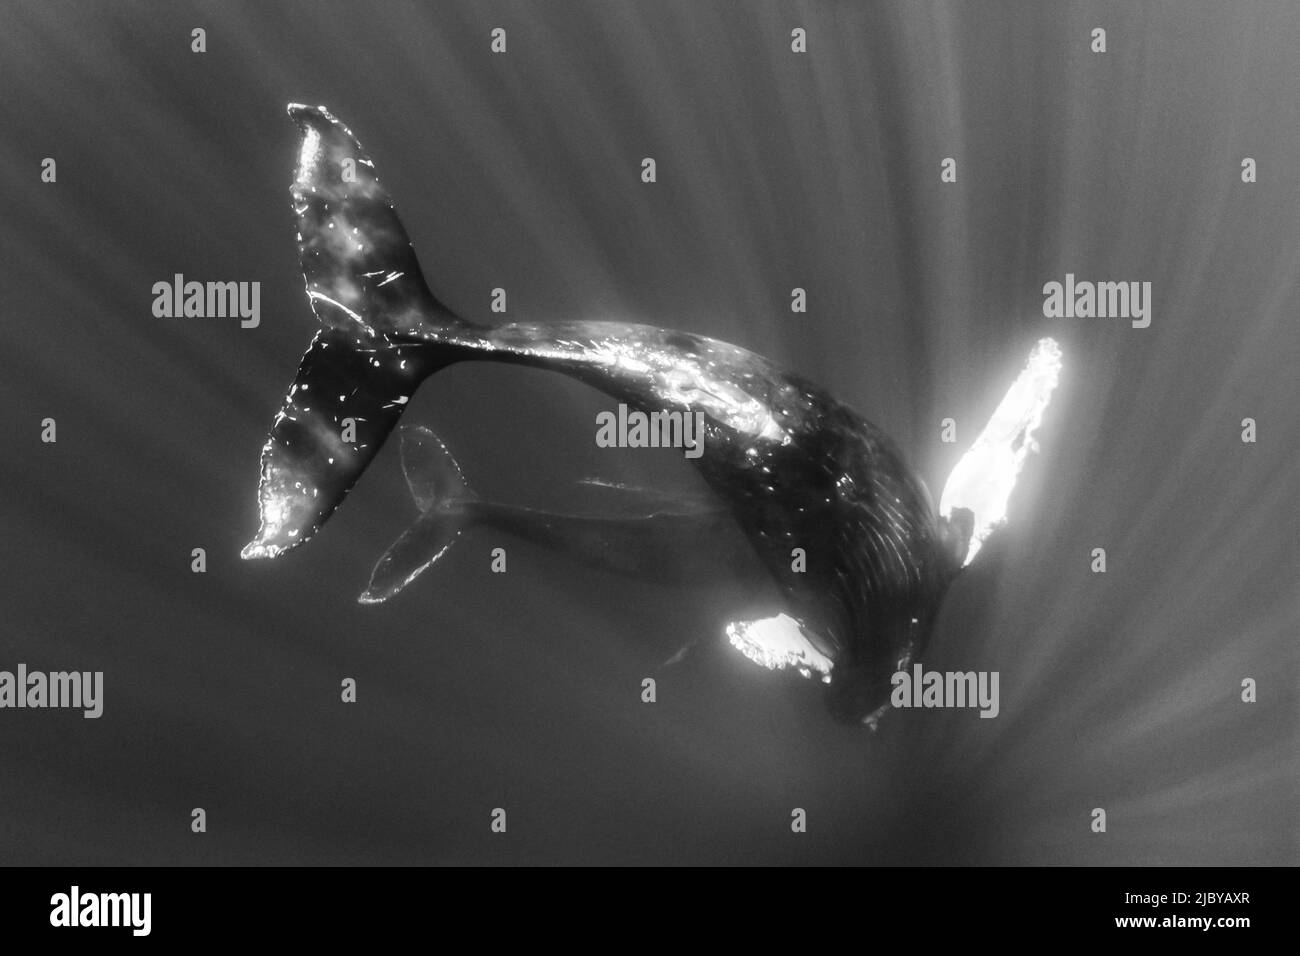 Noir et blanc, photo sous-marine, la baleine à bosse nageante (Megaptera novaeangliae) fait une approche étroite, Maui, Hawaii Banque D'Images